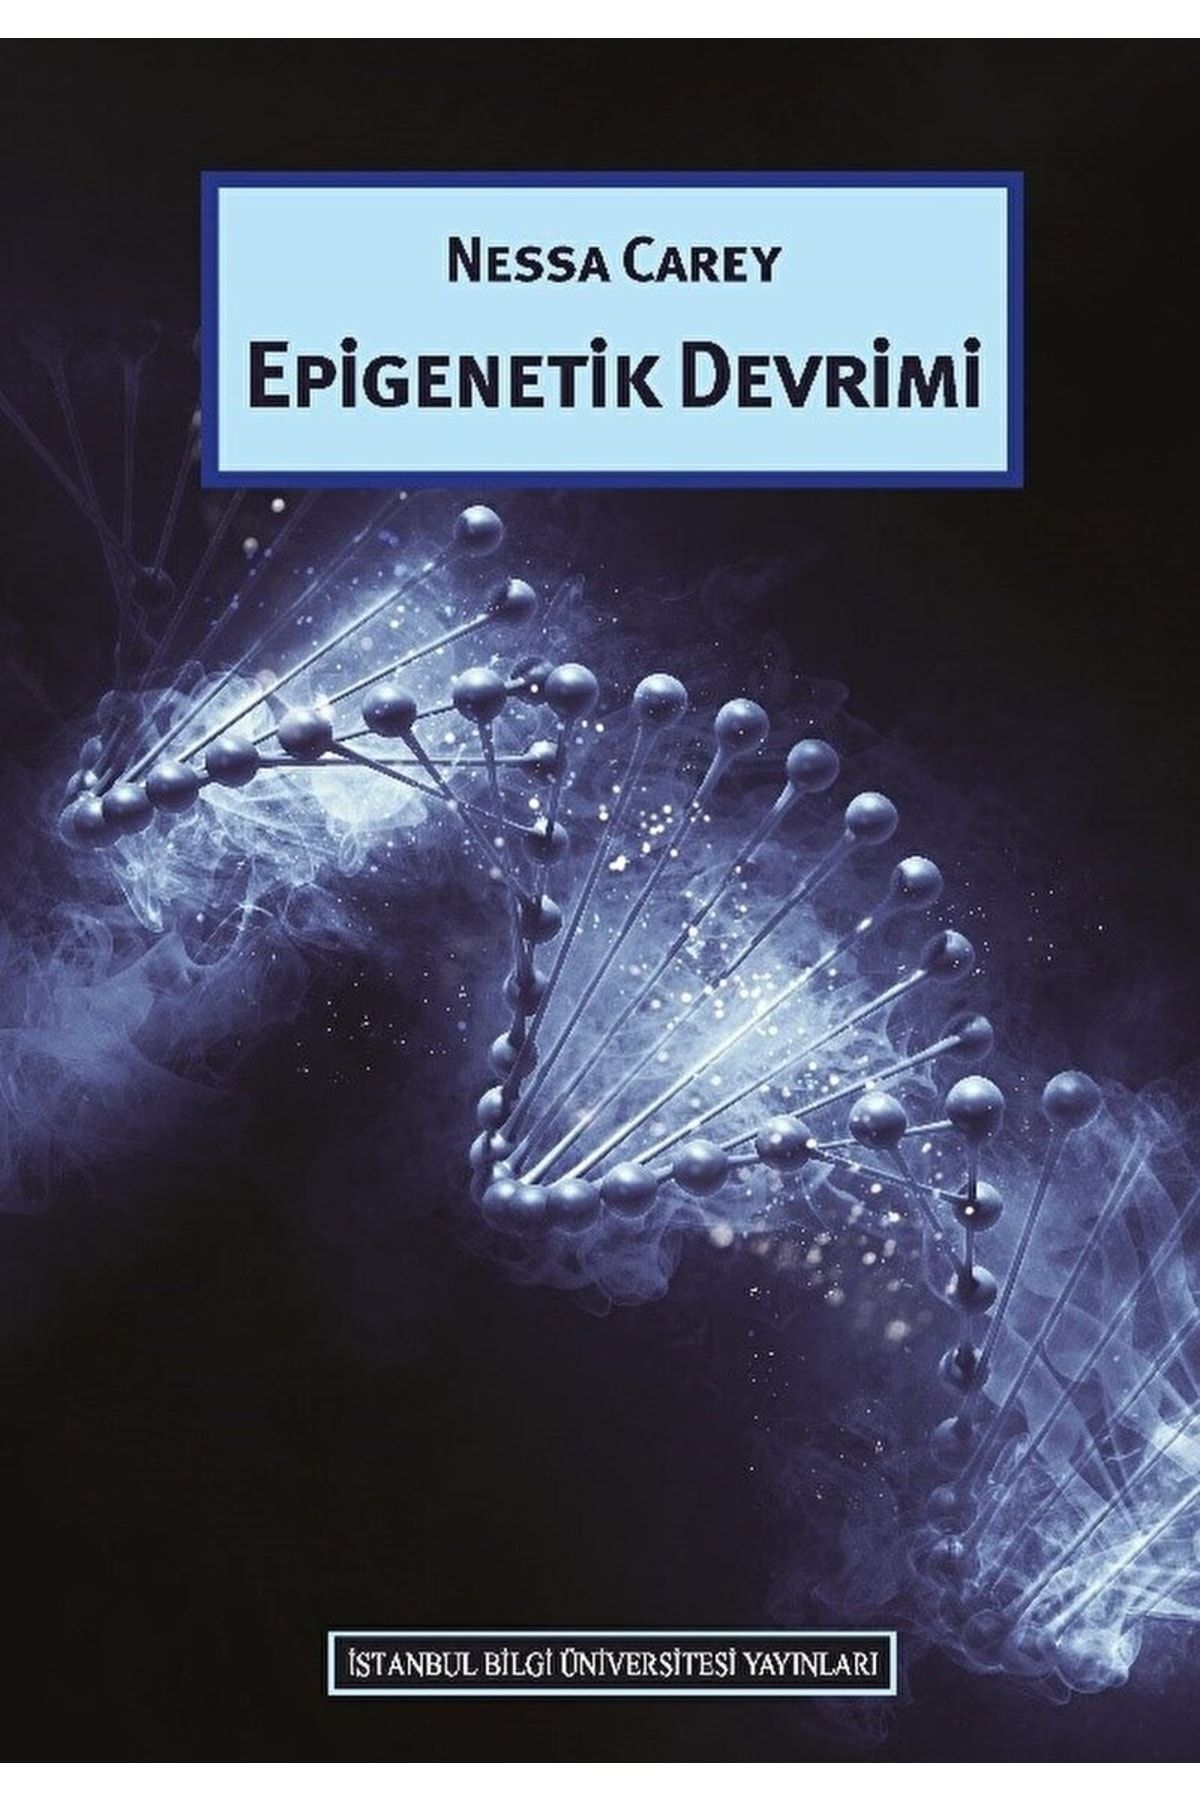 İstanbul Bilgi Üniversitesi Yayınları Epigenetik Devrimi - Nessa Carey Epigenetik Devrimi Kitabı" -